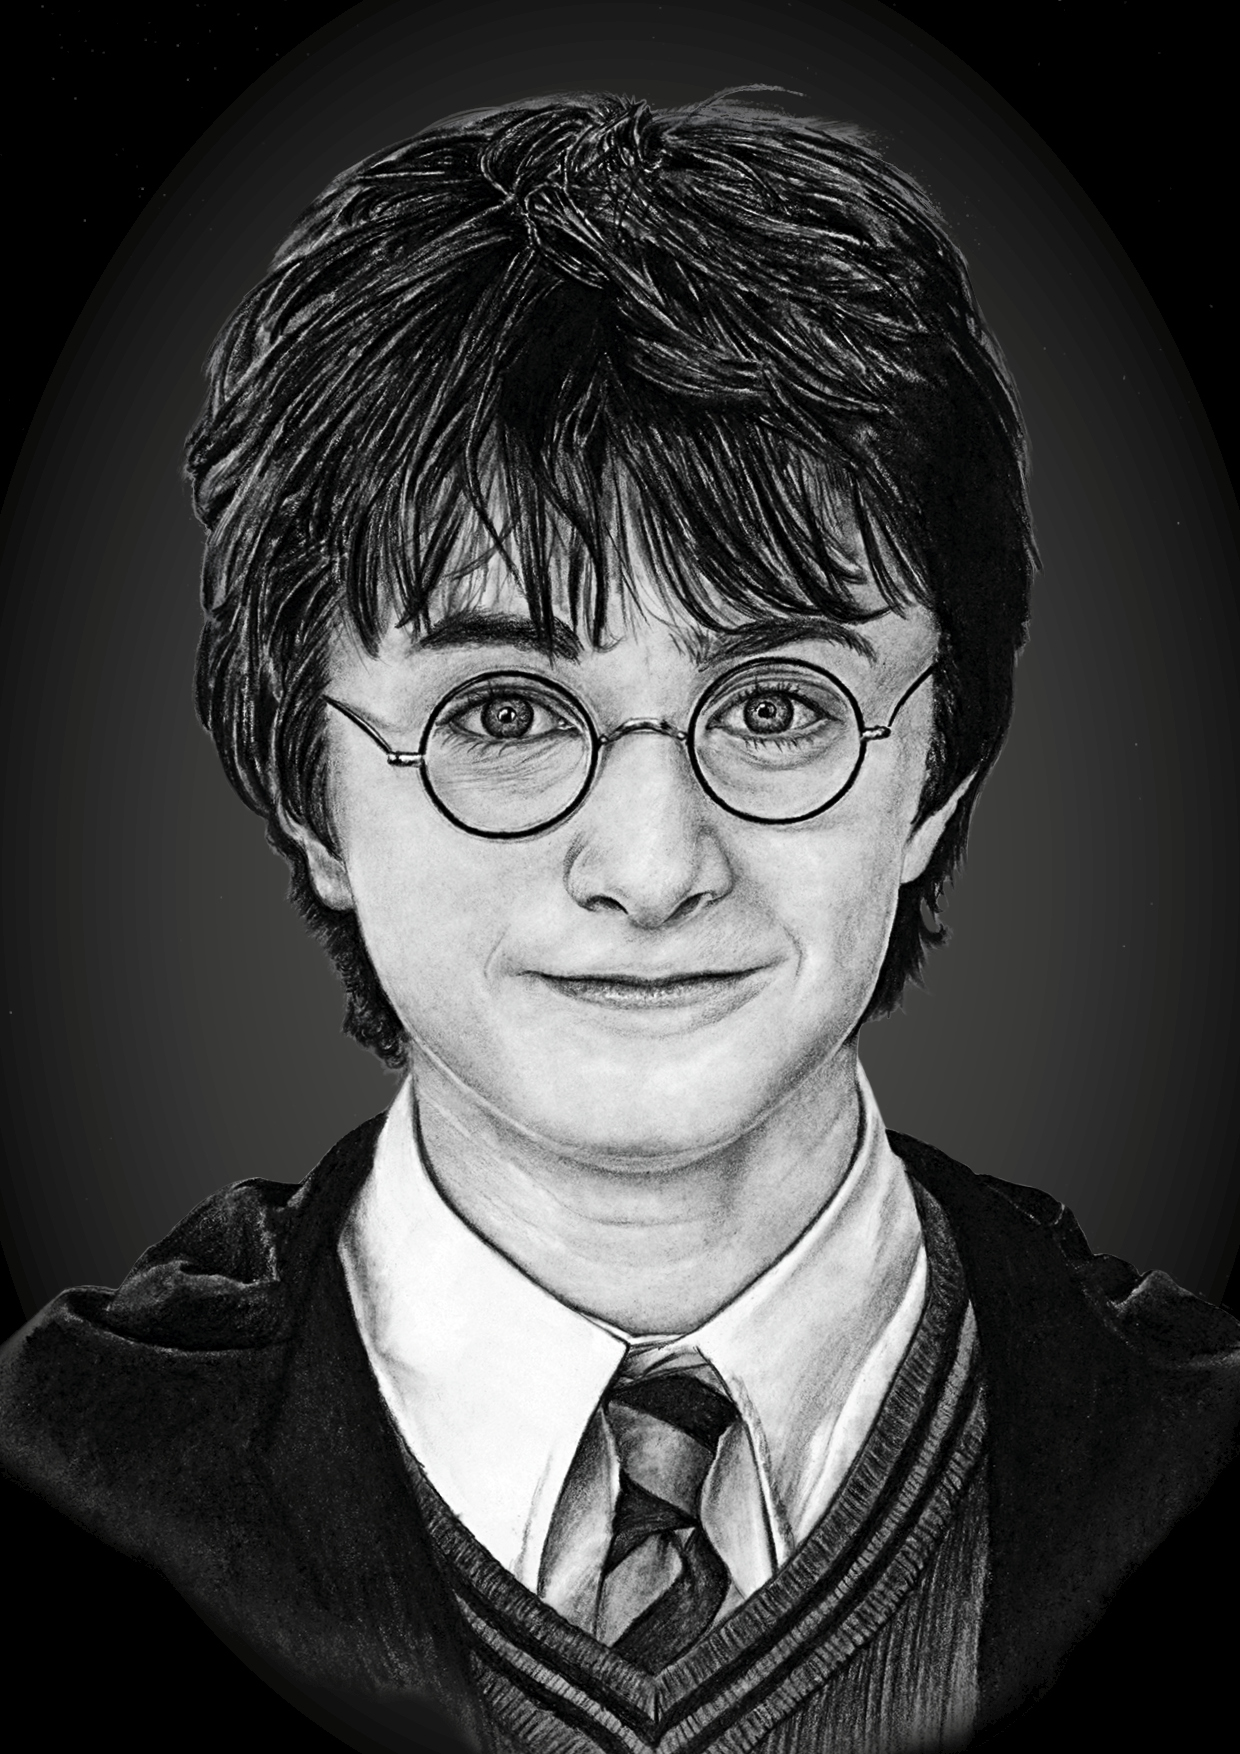 Daniel Radcliffe - reprodukce kresby - NA OBJEDNÁVKU DO 5 DNŮ